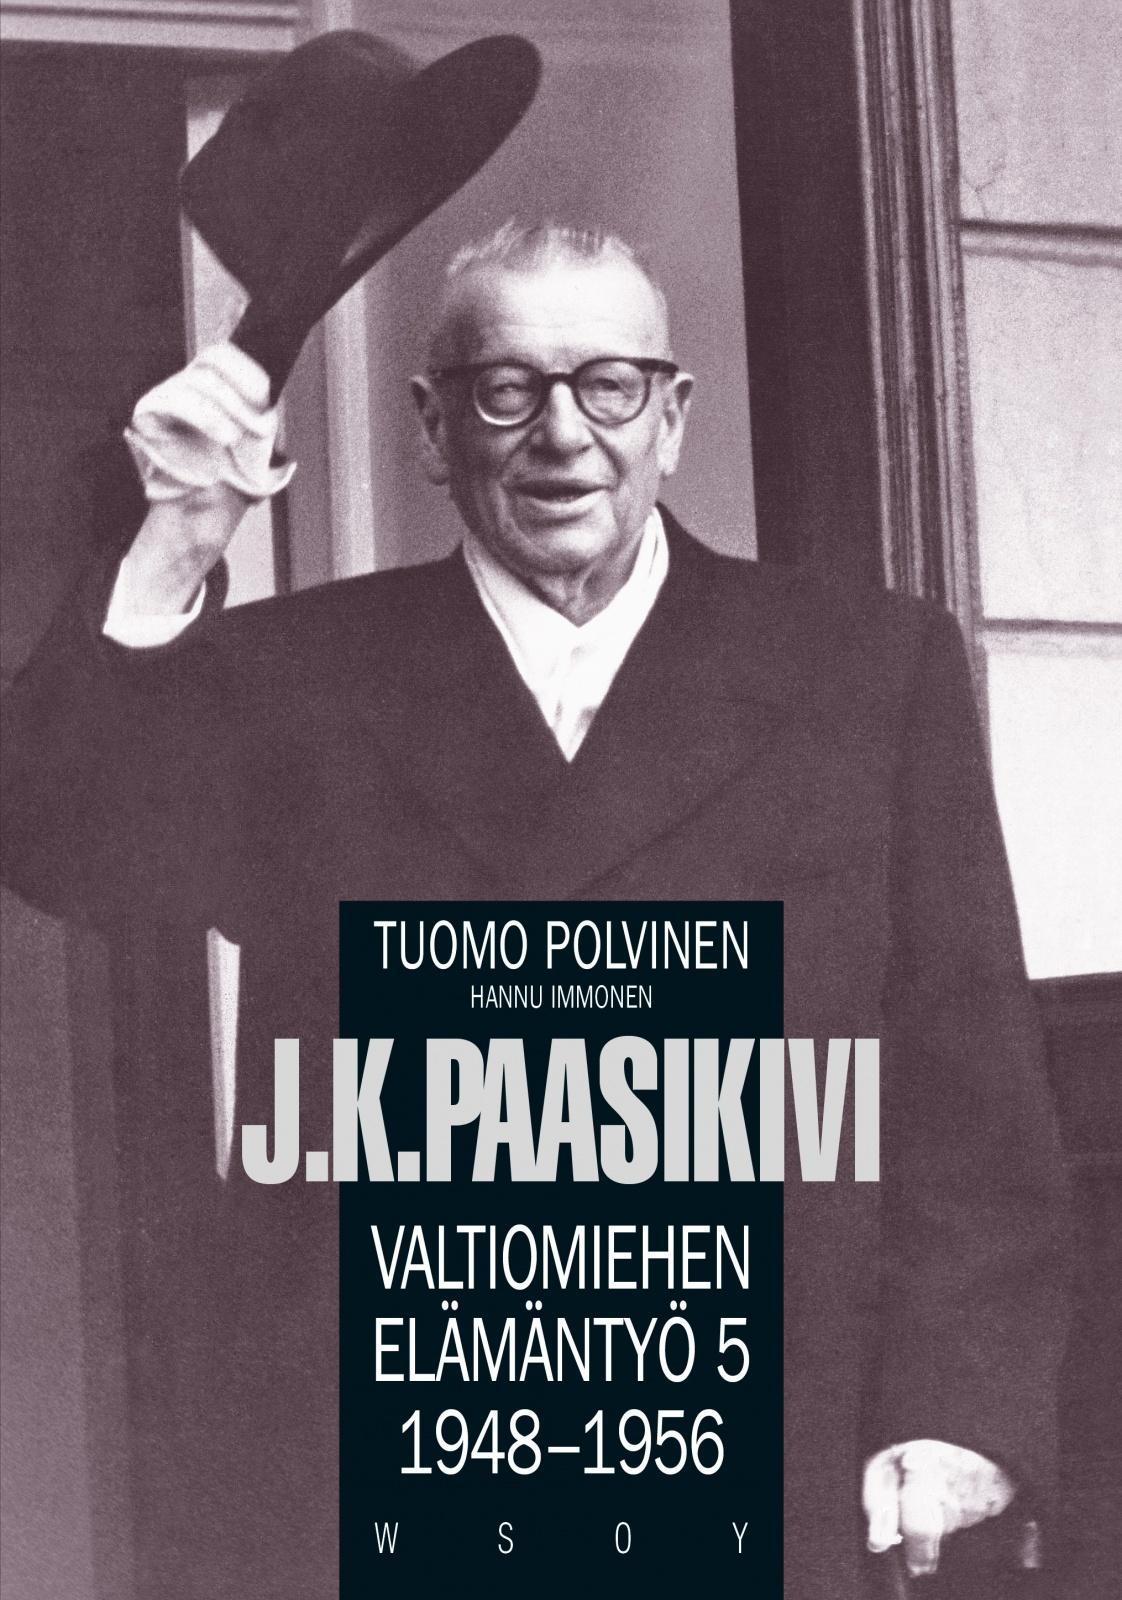 Tuomo Polvinen, Hannu Heikkilä, Hannu Immonen: J. K. Paasikivi (Hardcover, Finnish language, 2003, WSOY)